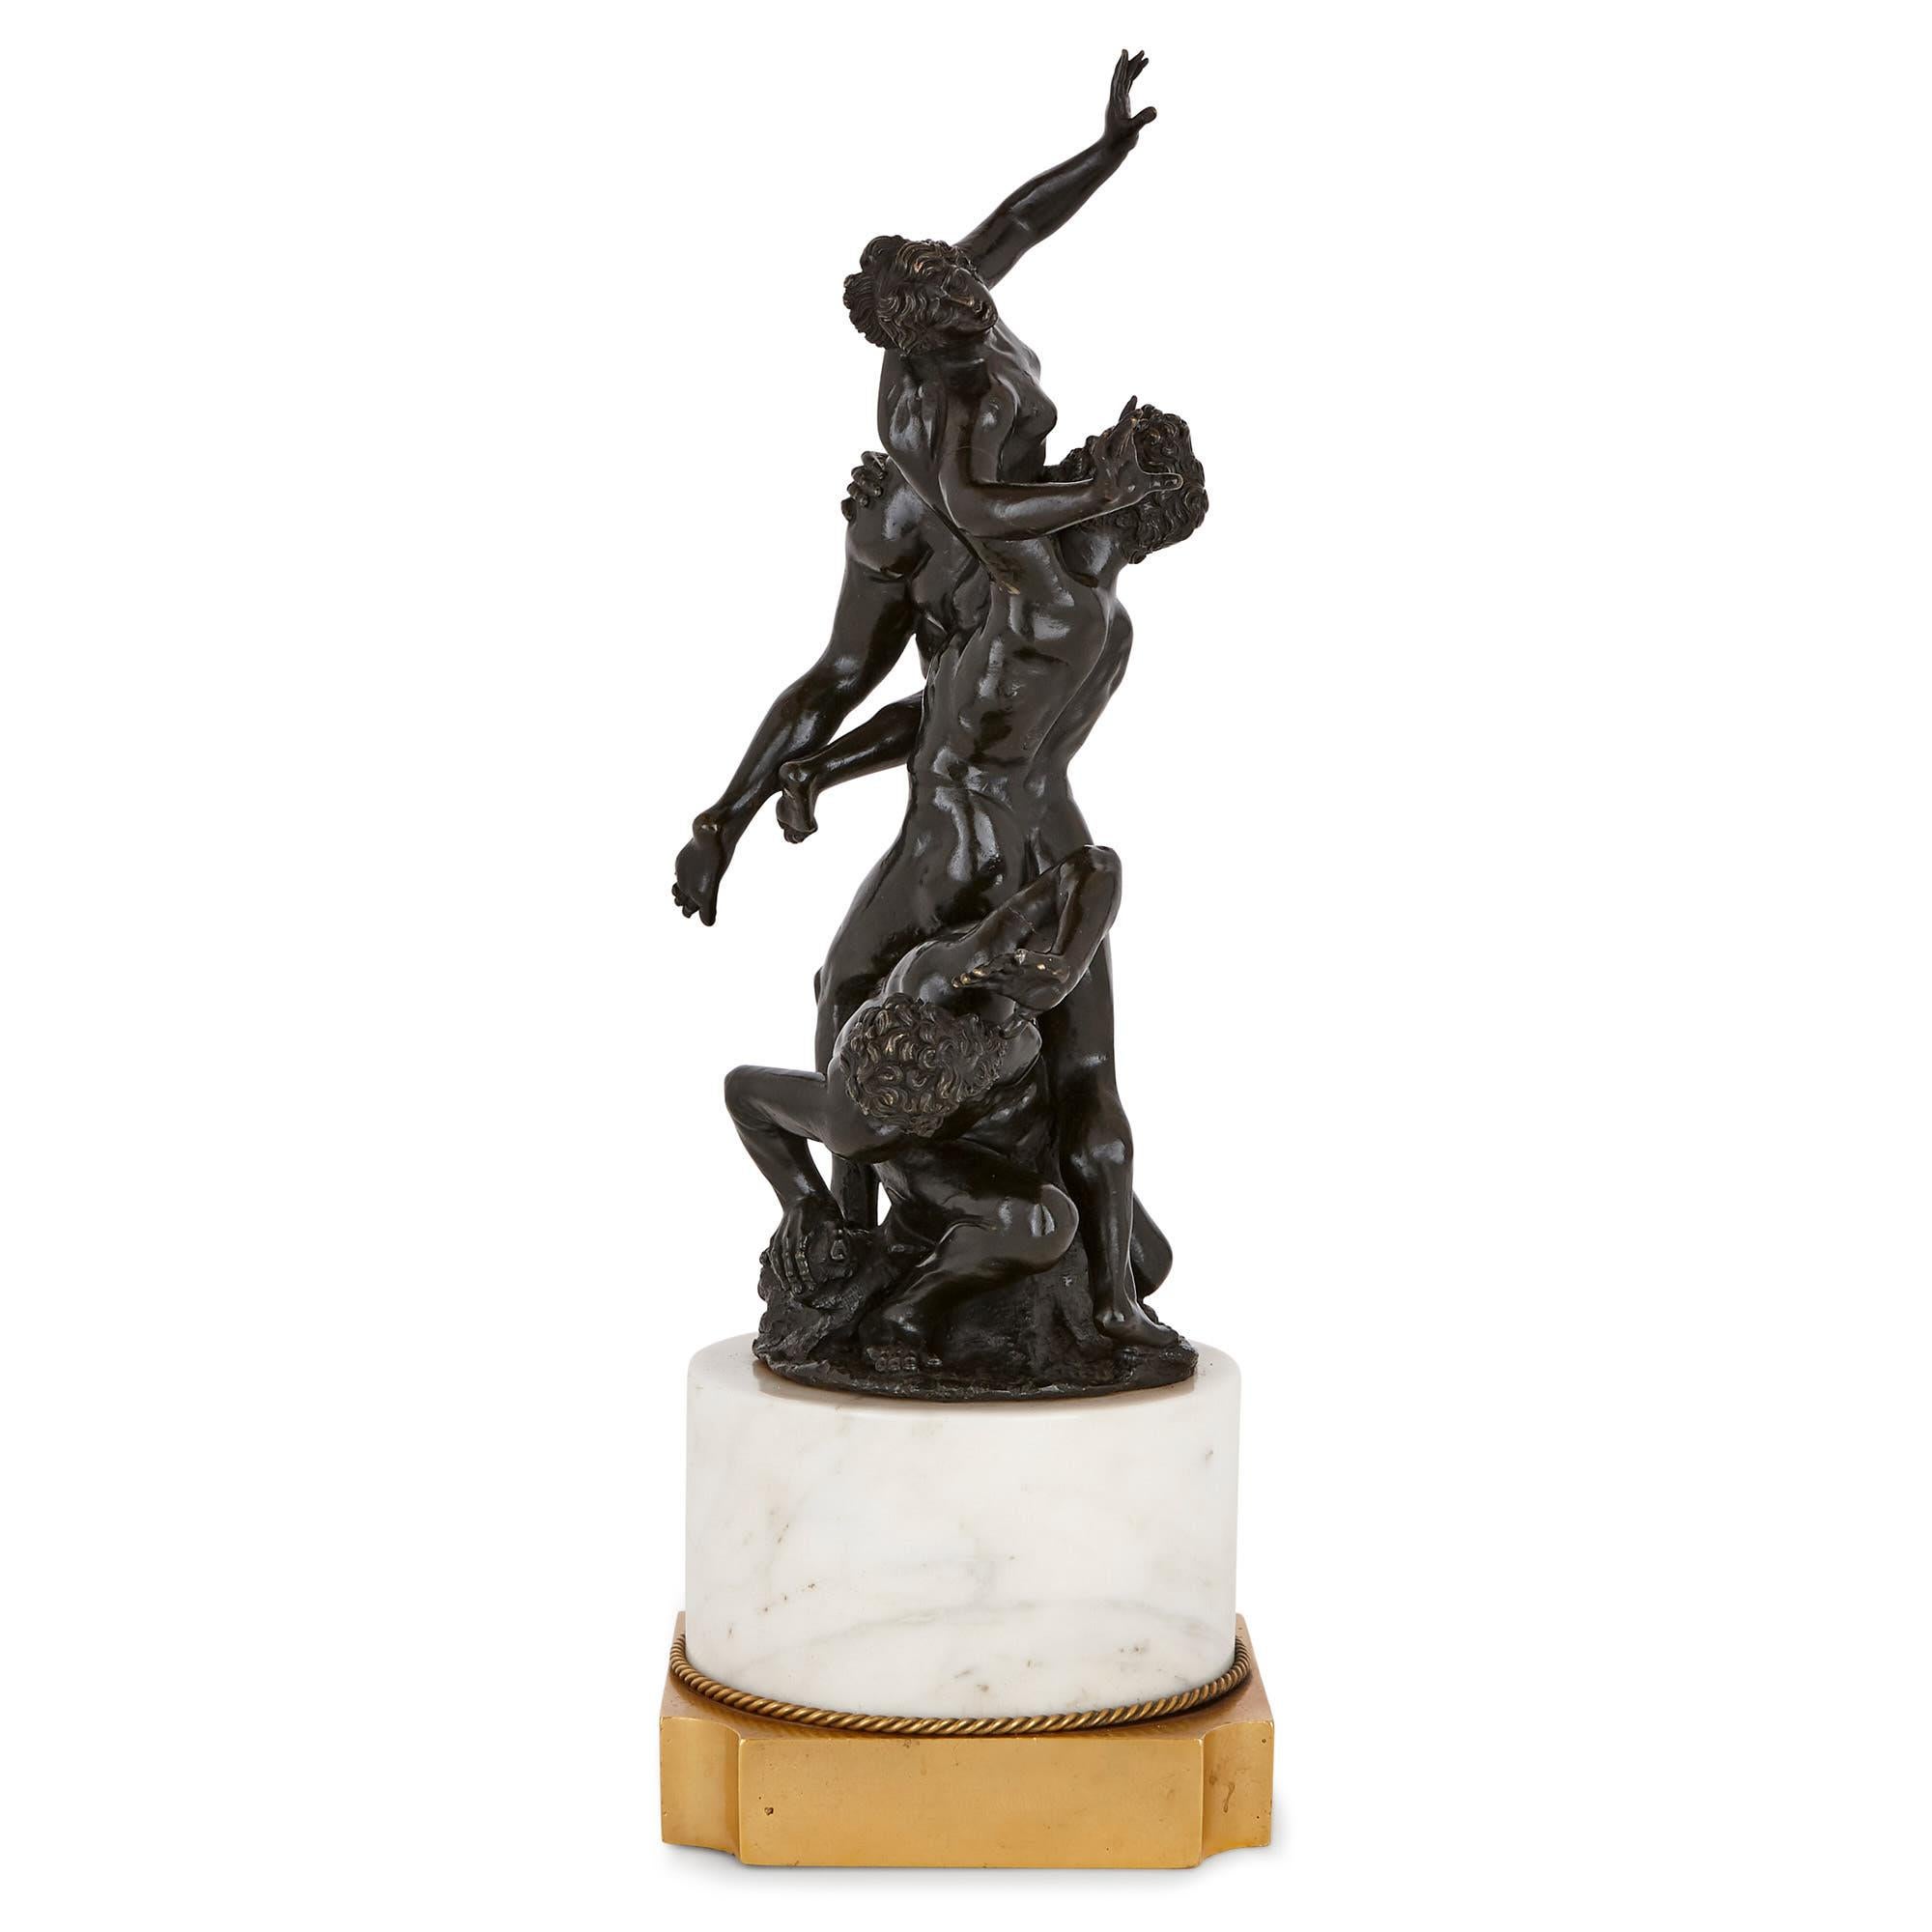 Cette fascinante sculpture en bronze à petite échelle représente 